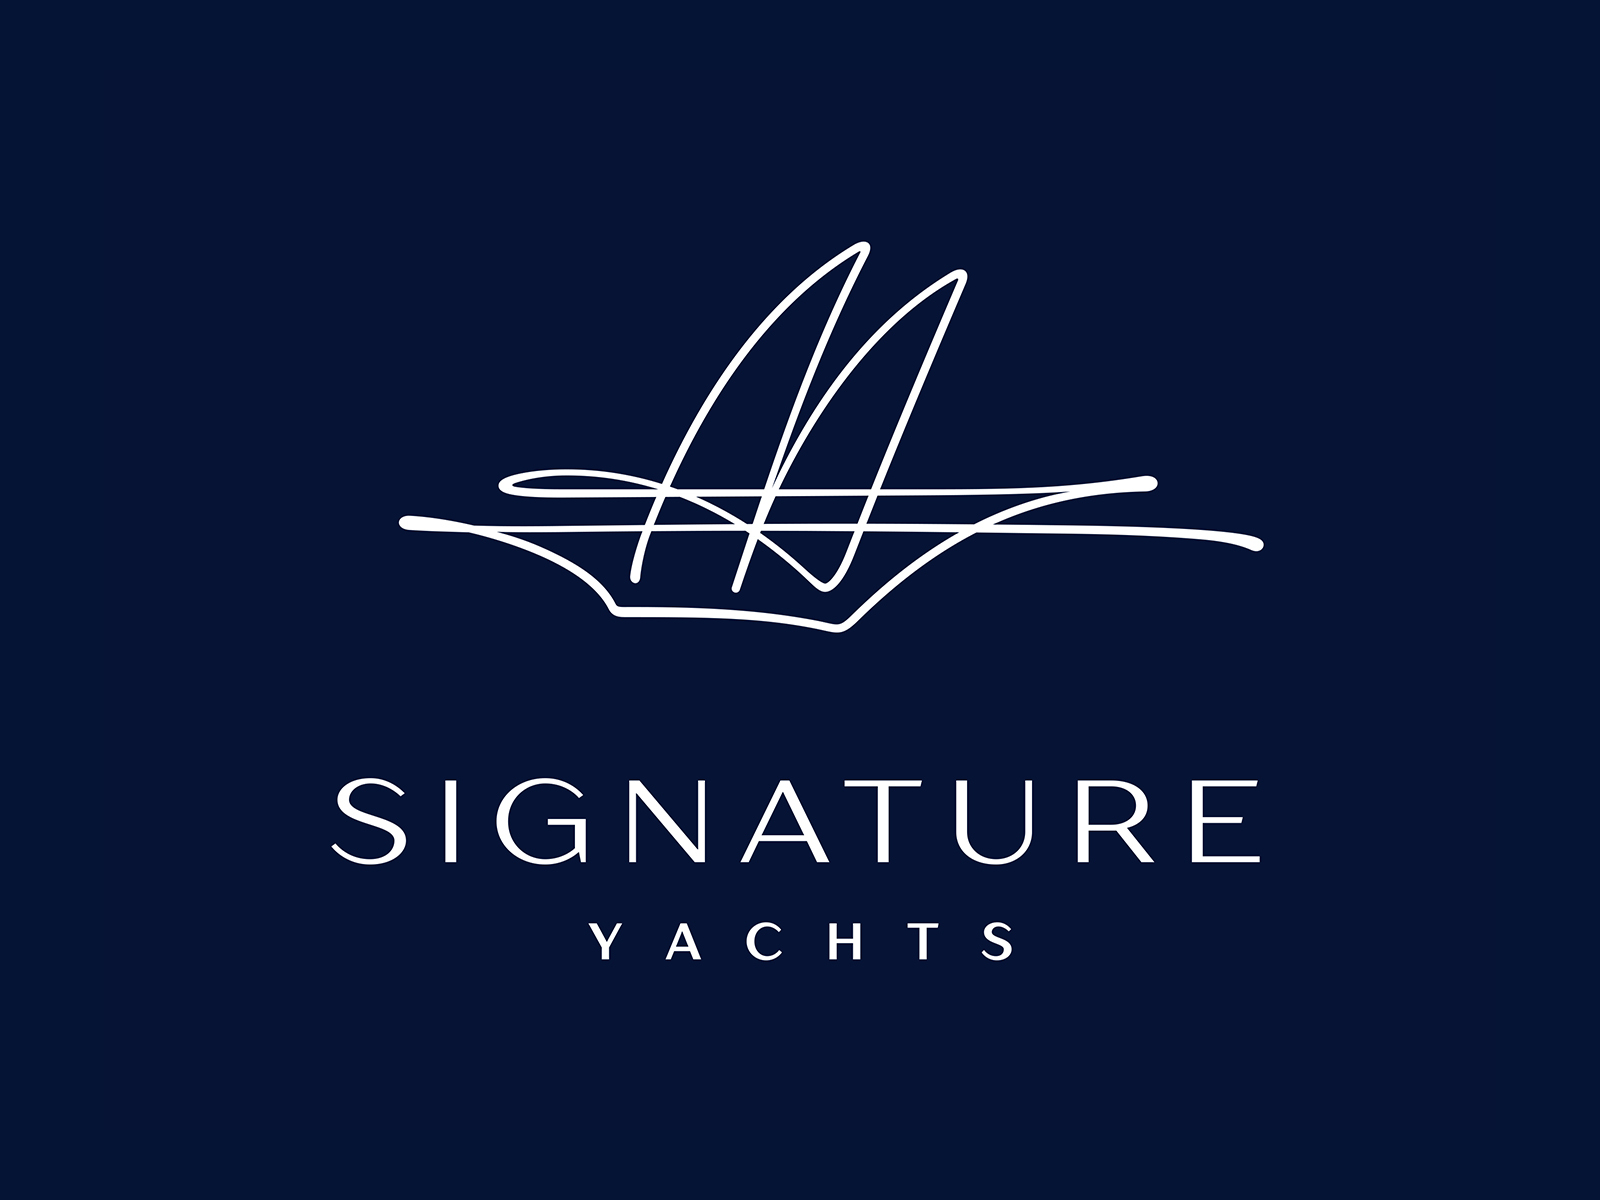 yacht logo images